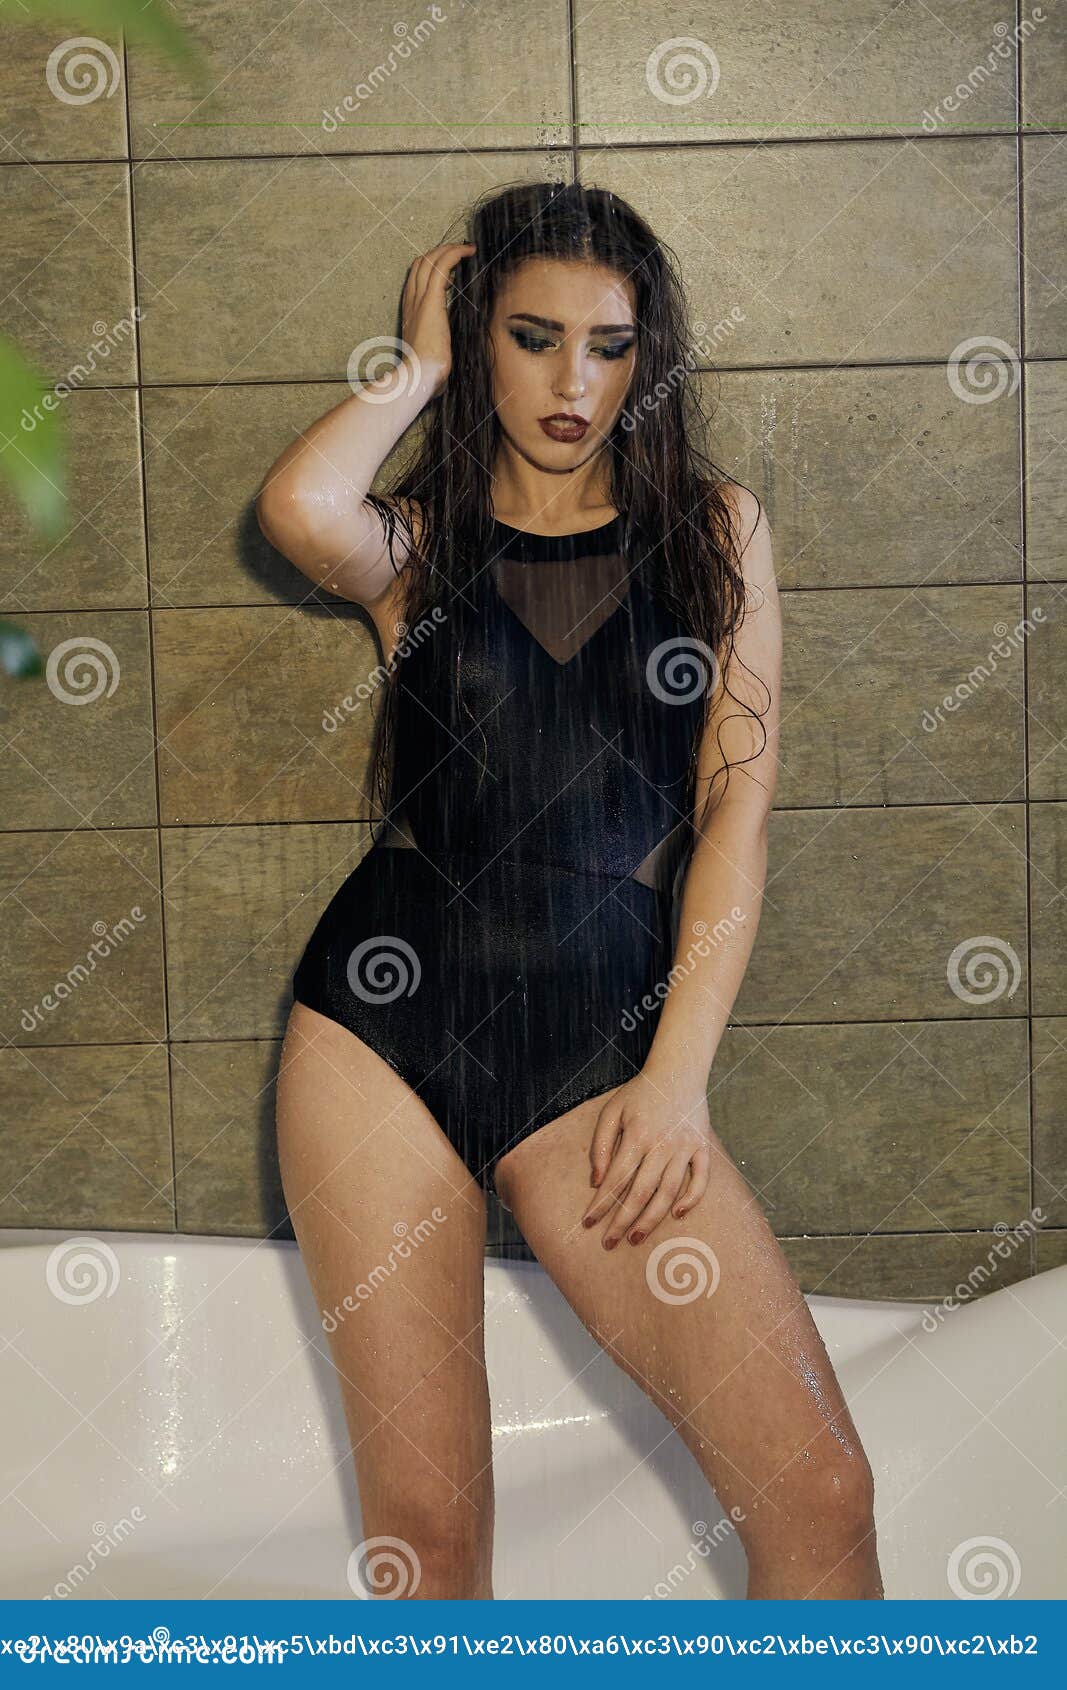 sexy black girl shower